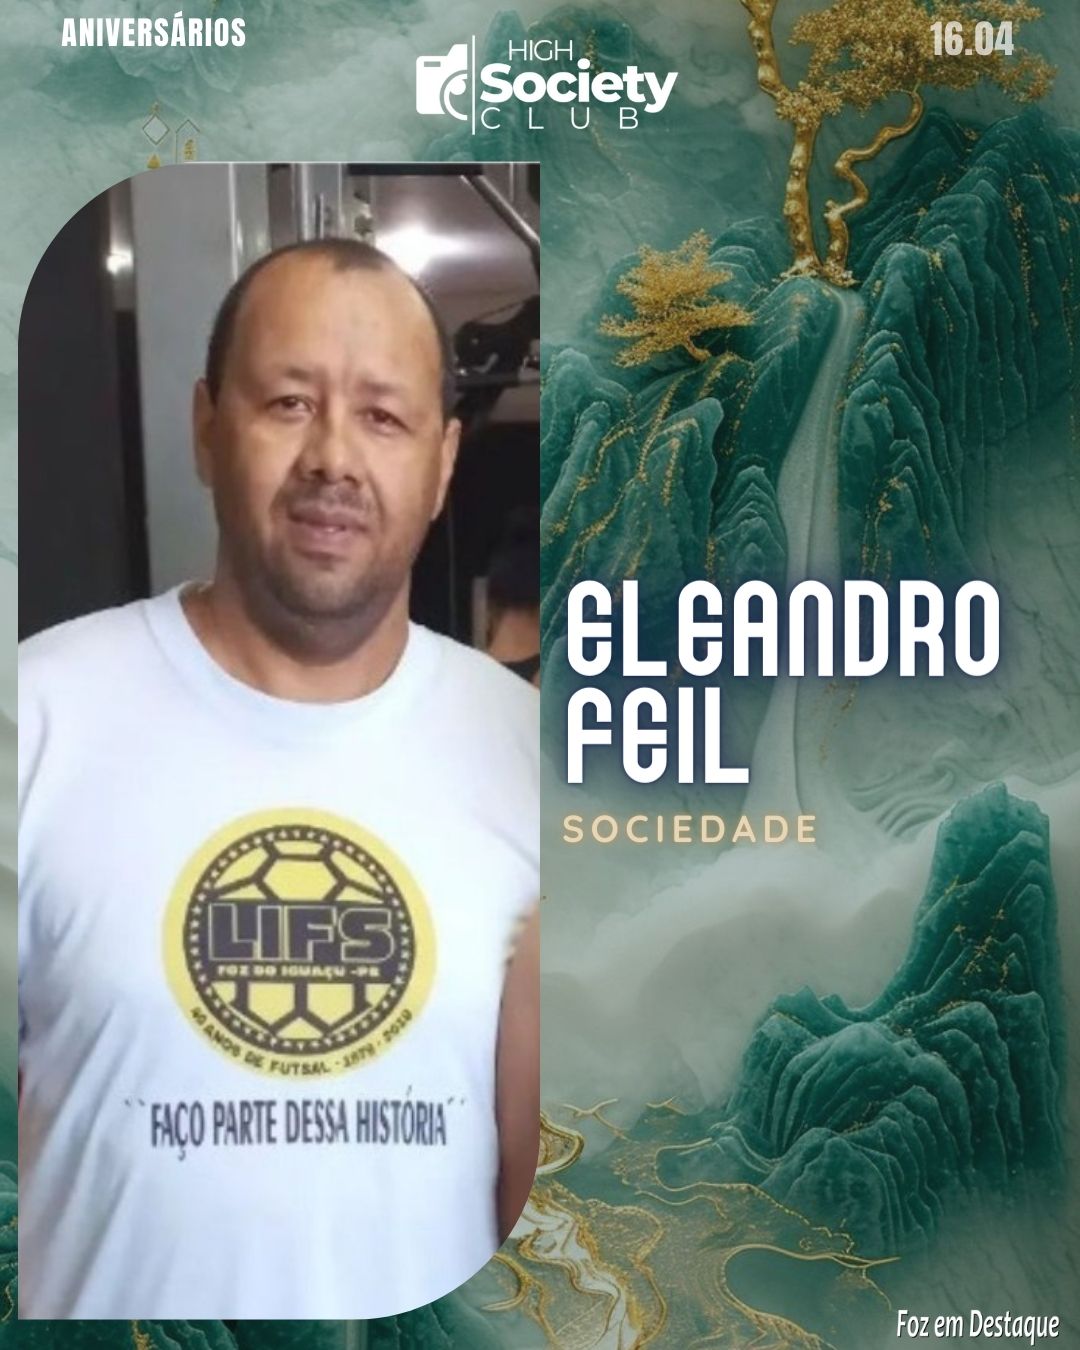 Eleandro Feil - Especialista em arbitragem e organização de eventos de Futsal  - High Society Club Foz em Destaque